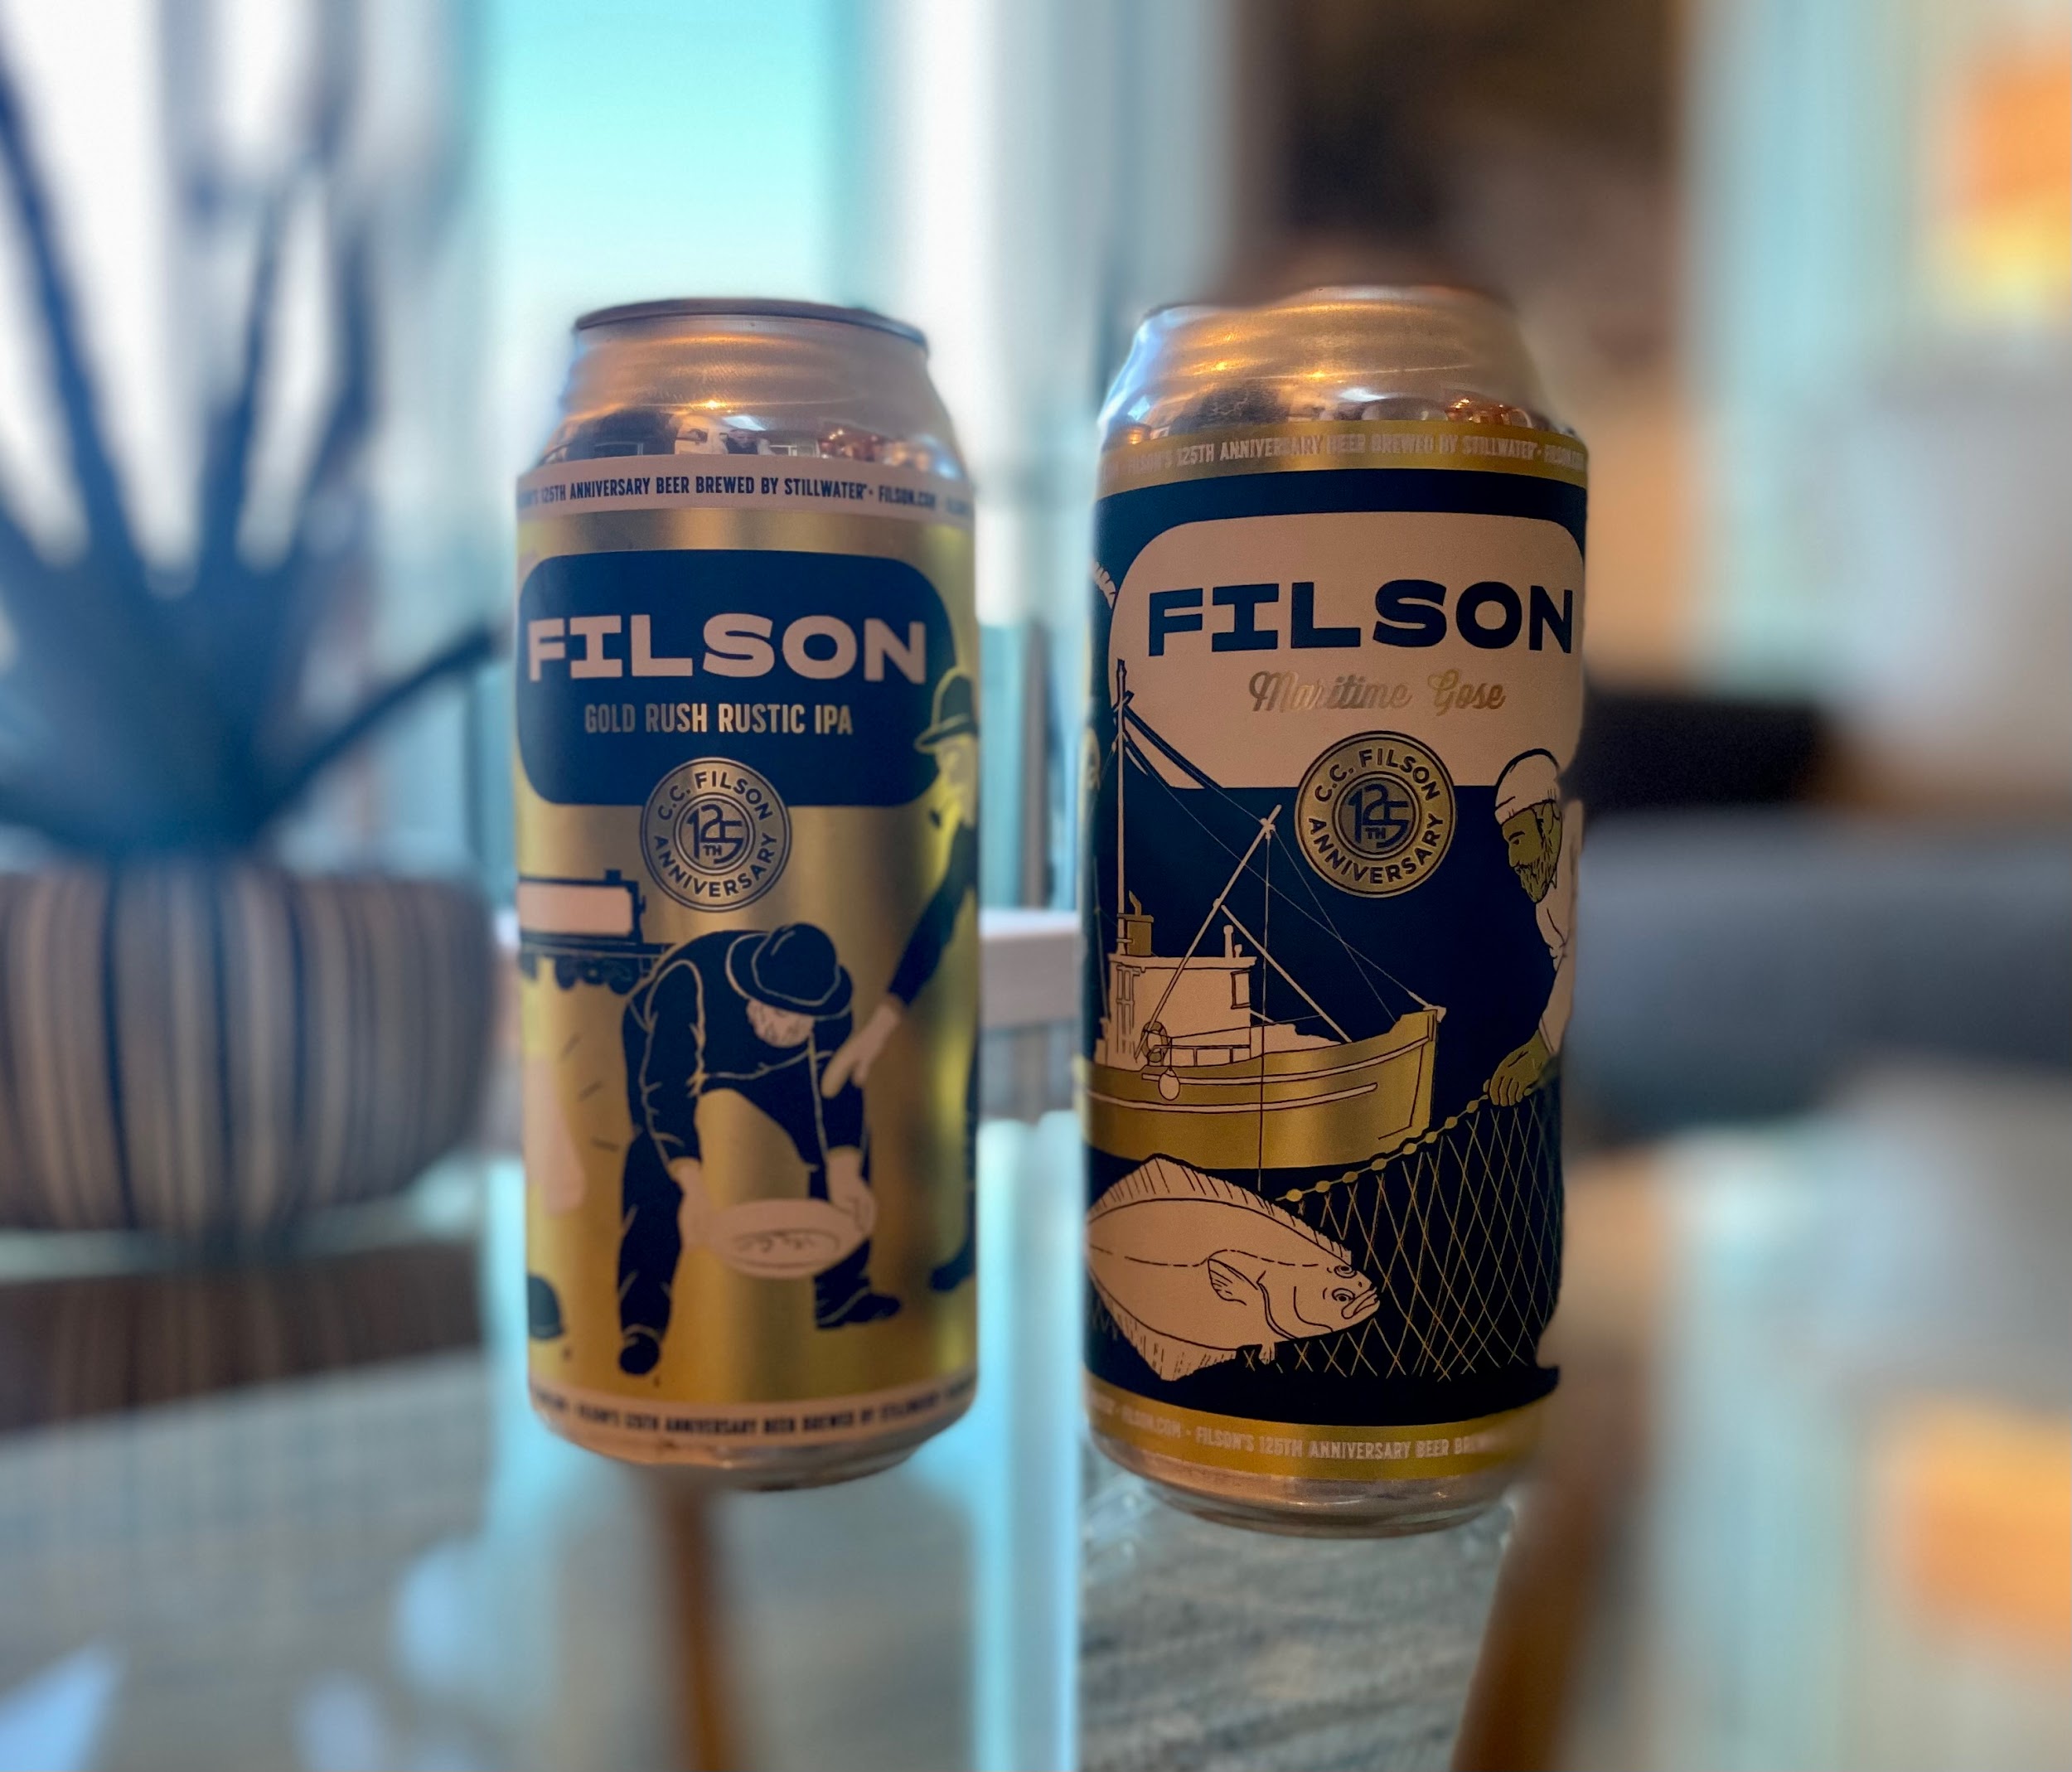 Filson x Stillwater Collaboration Beer